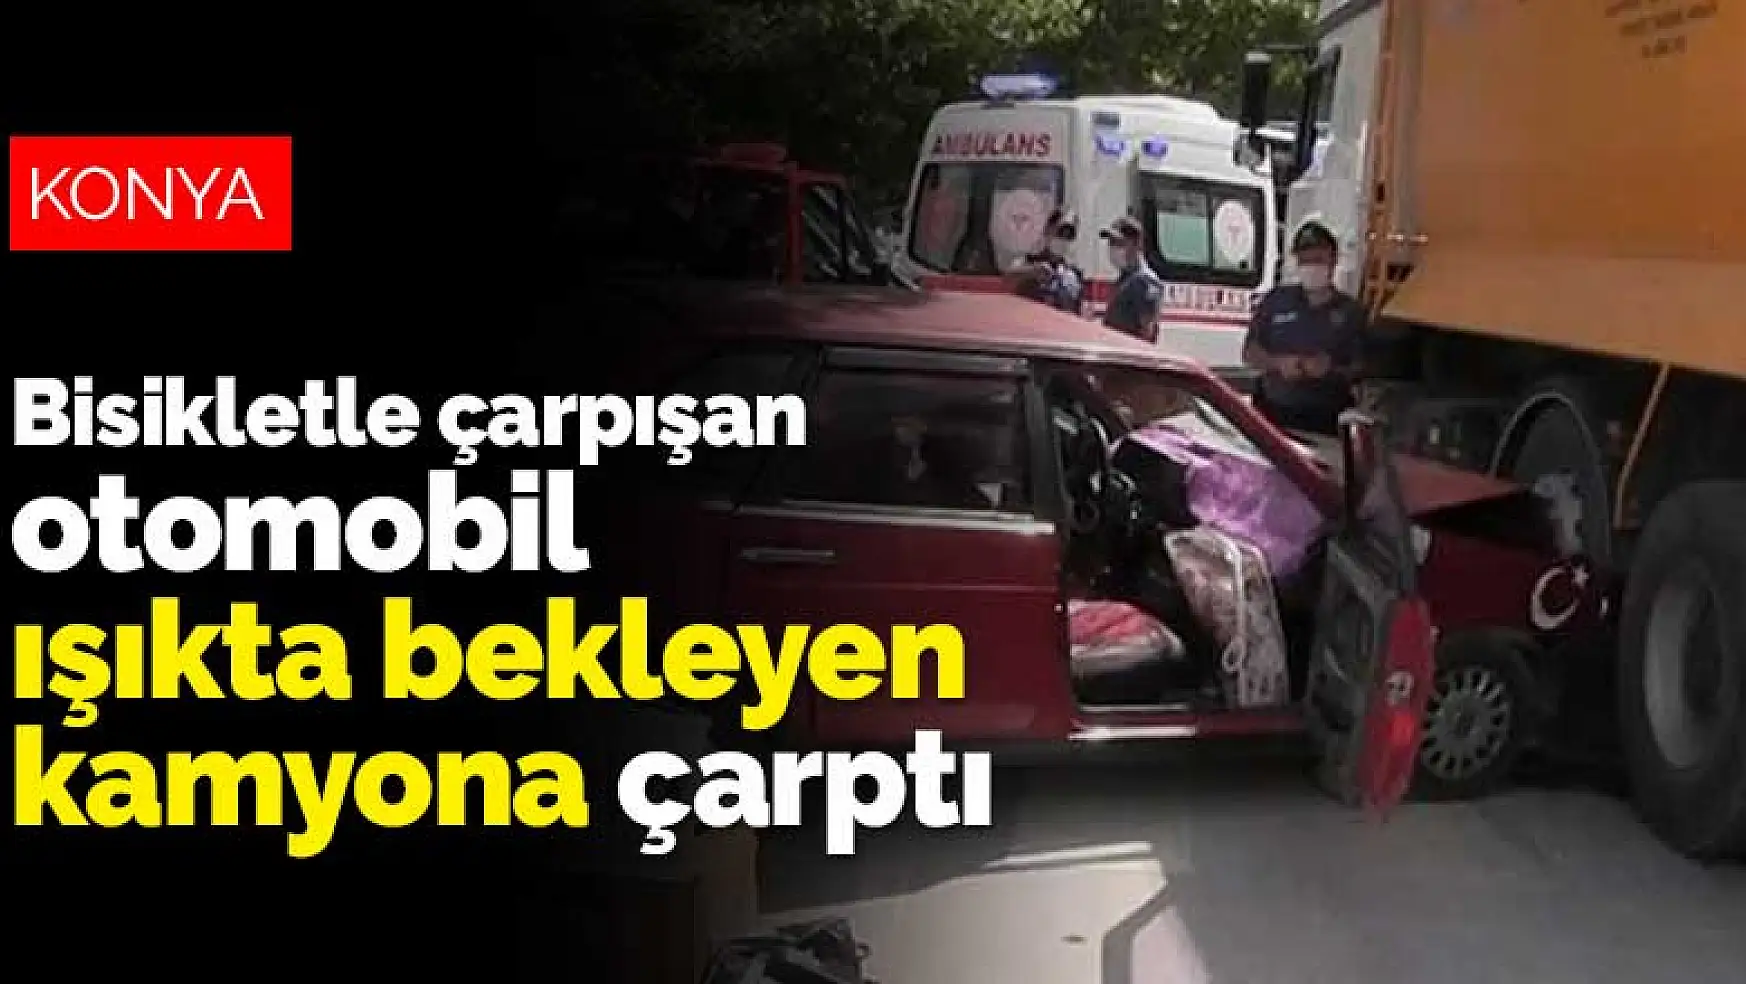 Konya'da bisikletle çarpışan otomobil ışıkta bekleyen kamyona çarptı